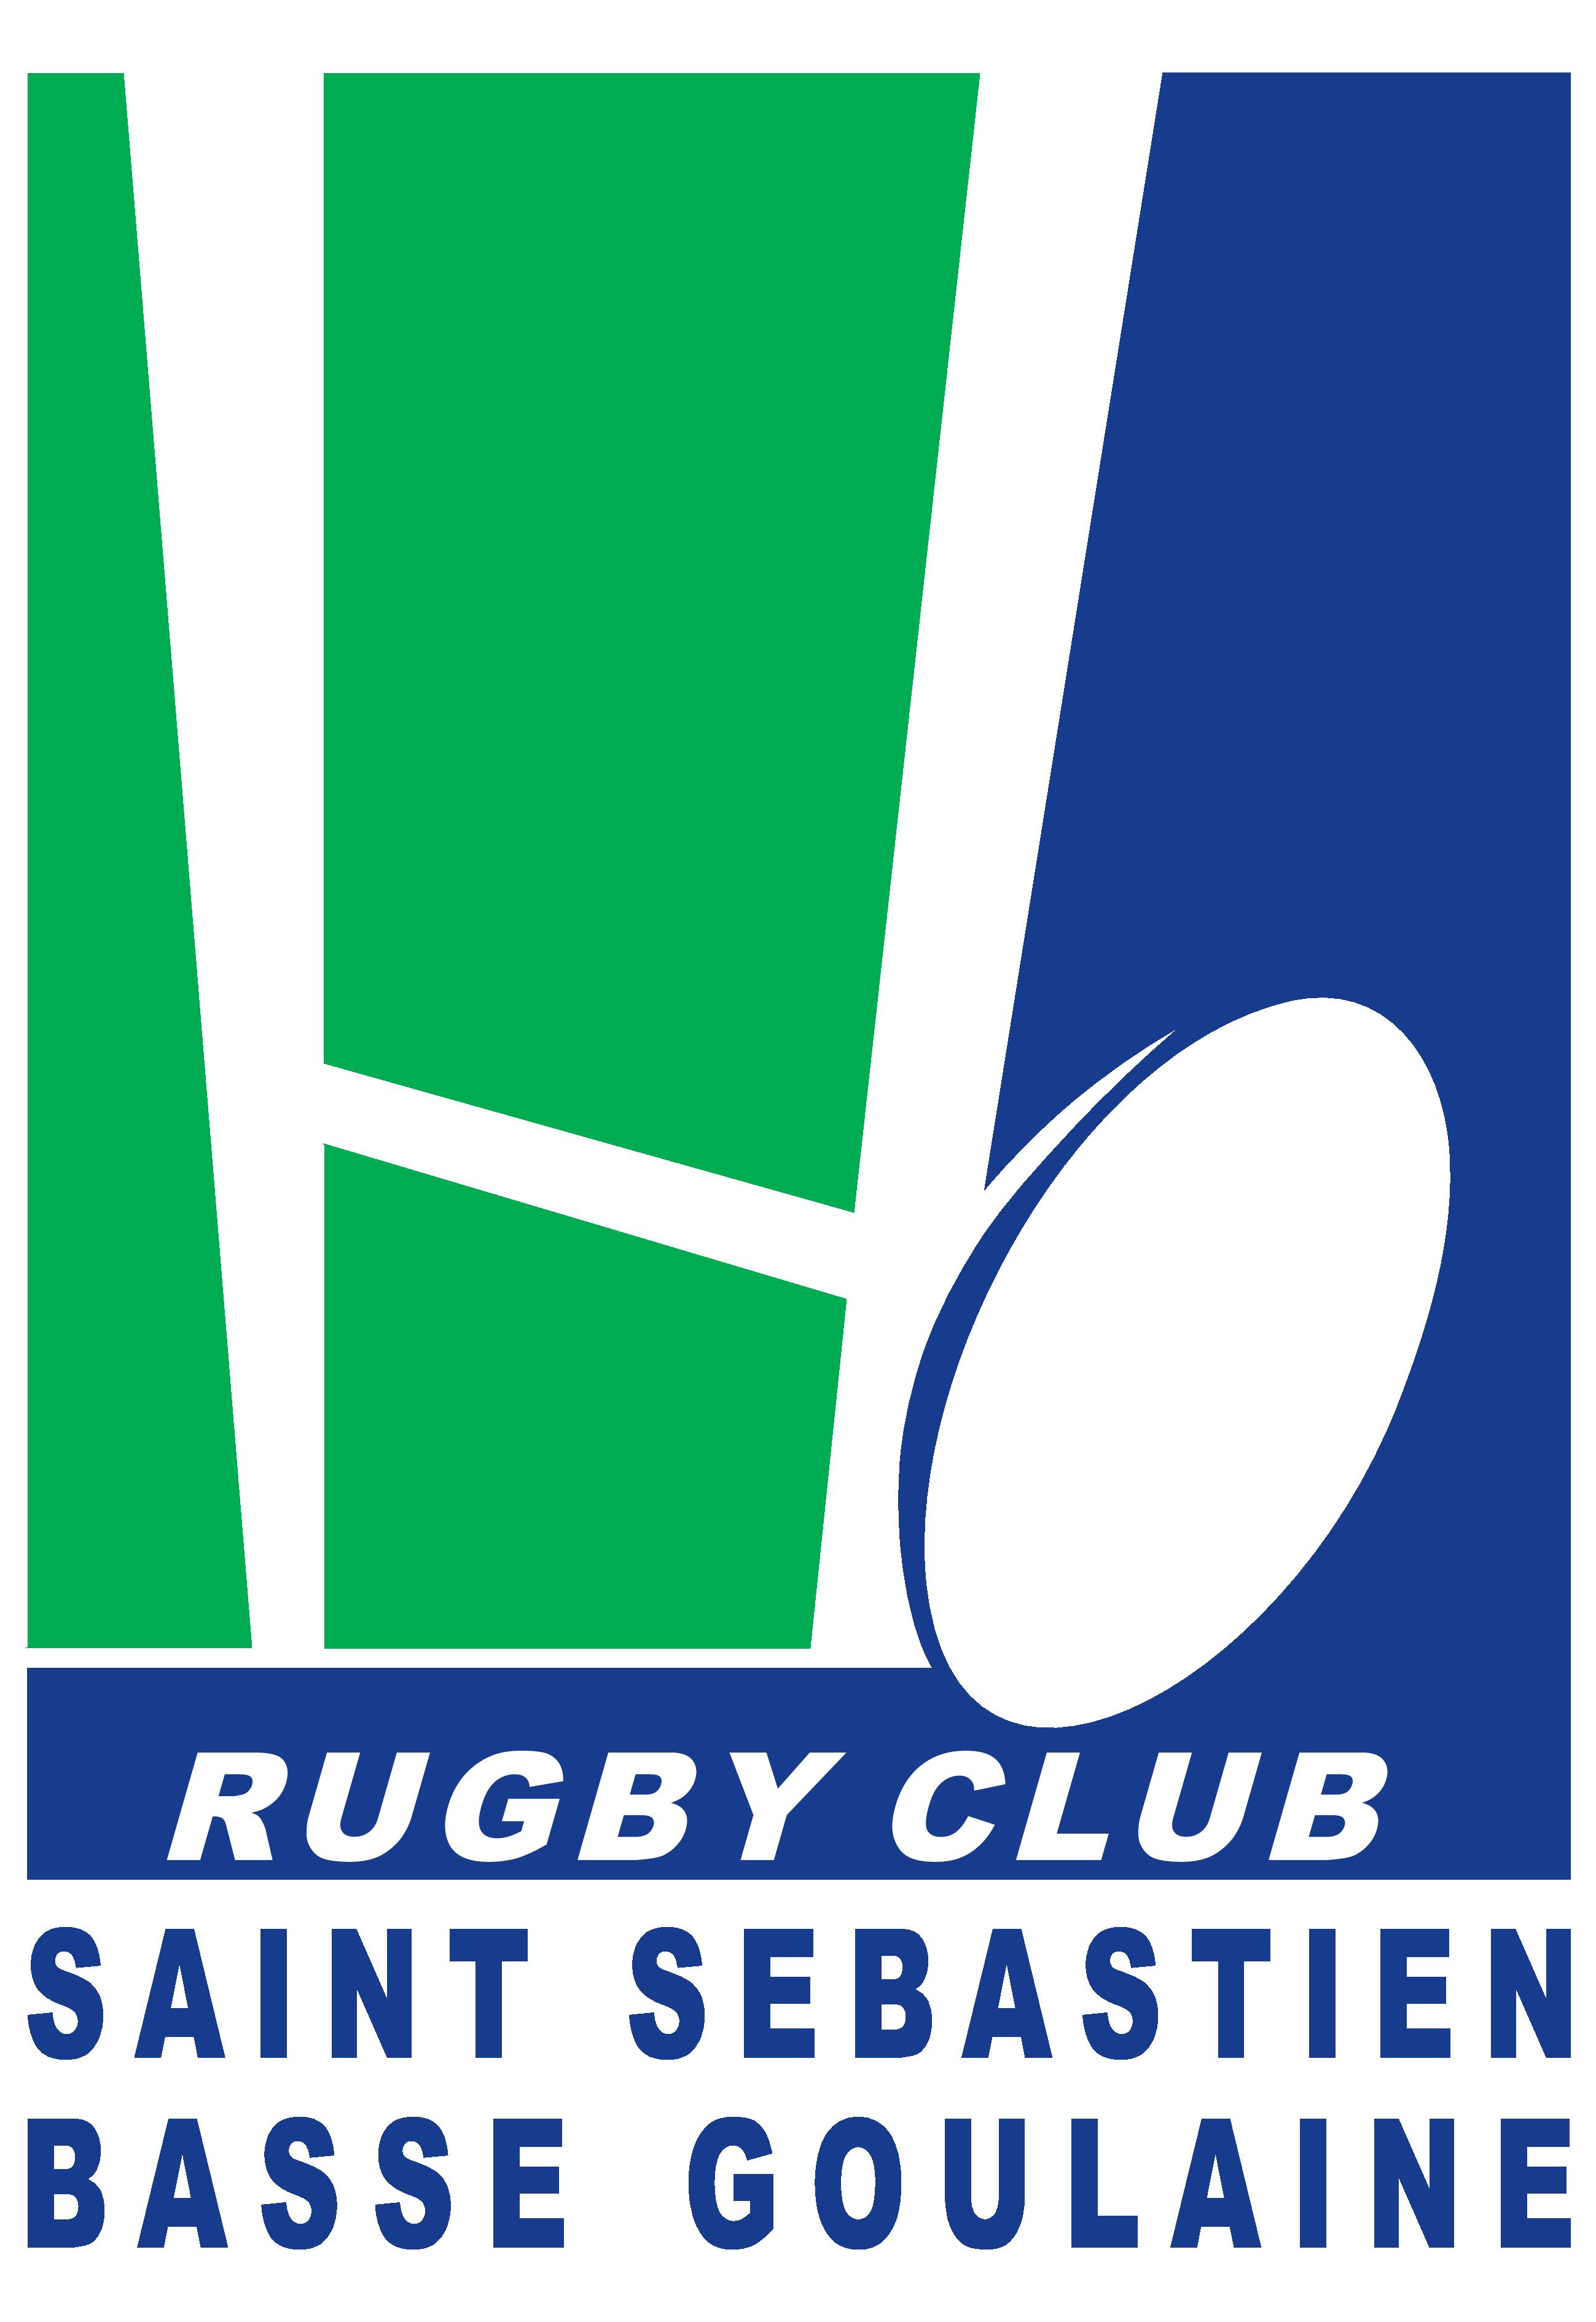 rugby-club-saint-sebastien-basse-goulaine-logo-620b891d5a06e423352934.jpg